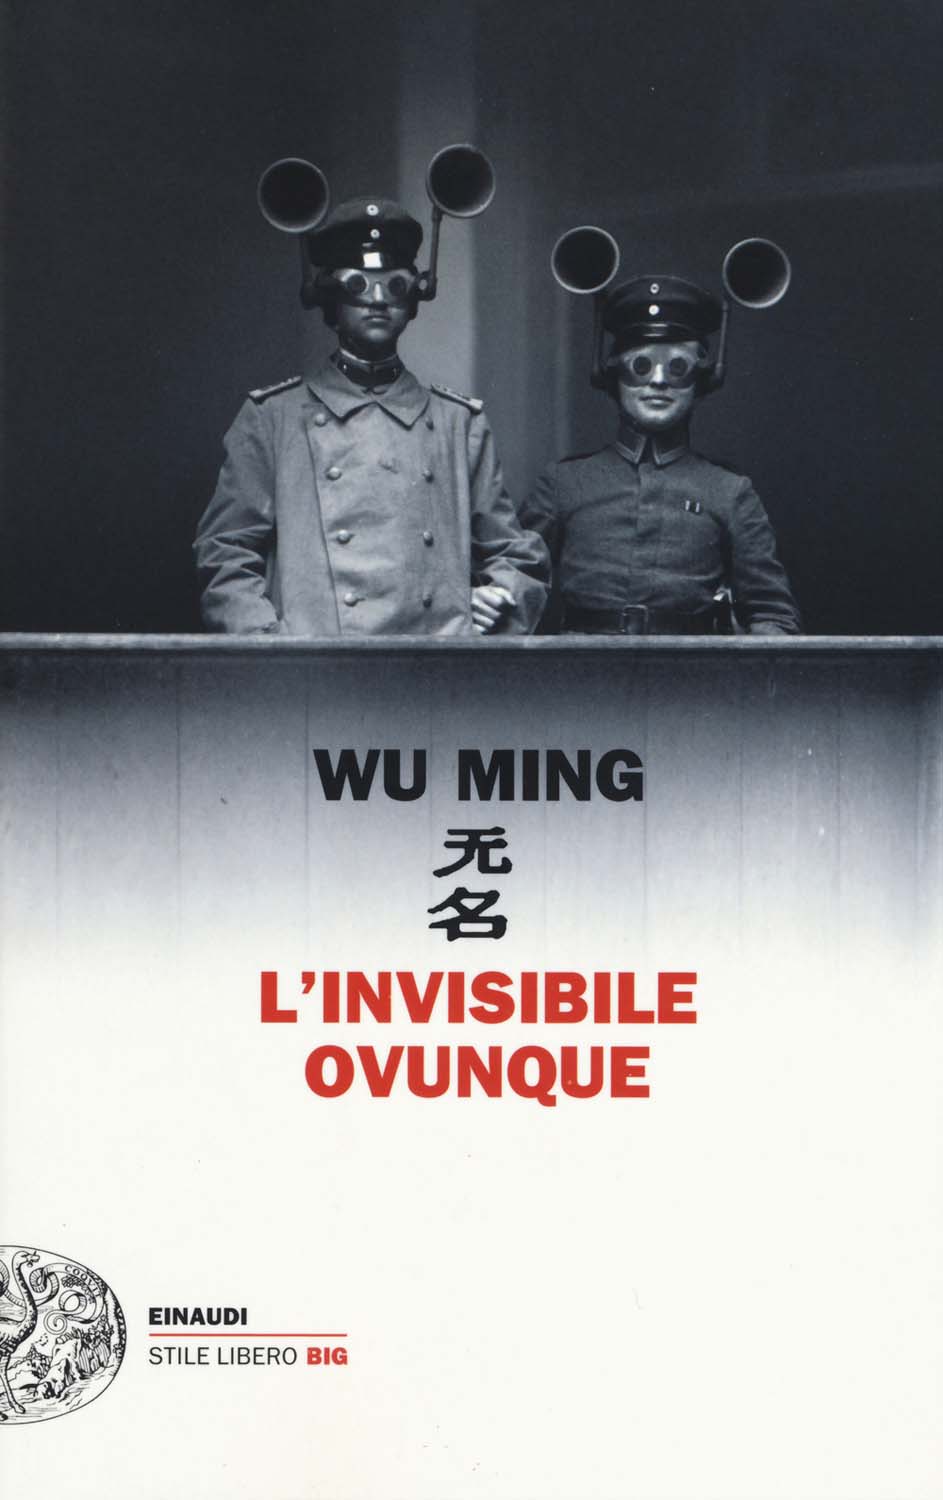 Libri Ming Wu - L'Invisibile Ovunque NUOVO SIGILLATO, EDIZIONE DEL 24/11/2015 SUBITO DISPONIBILE